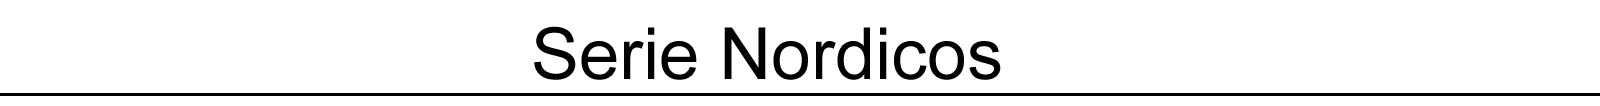 nordicos